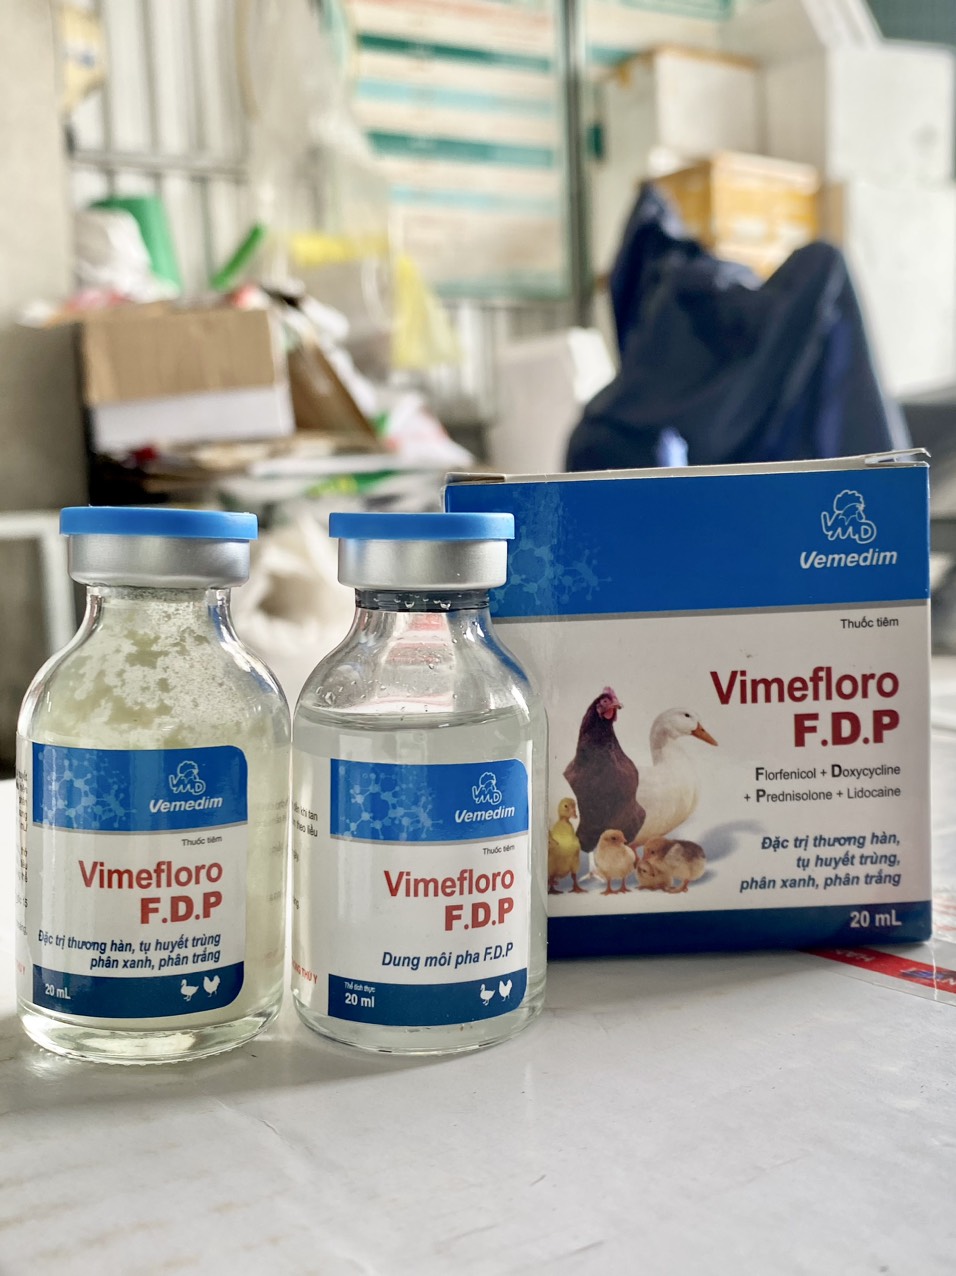 Vimefloro F.D.P (cặp 20ml) Thương hàn, tụ huyết trùng, phân xanh, phân trắng